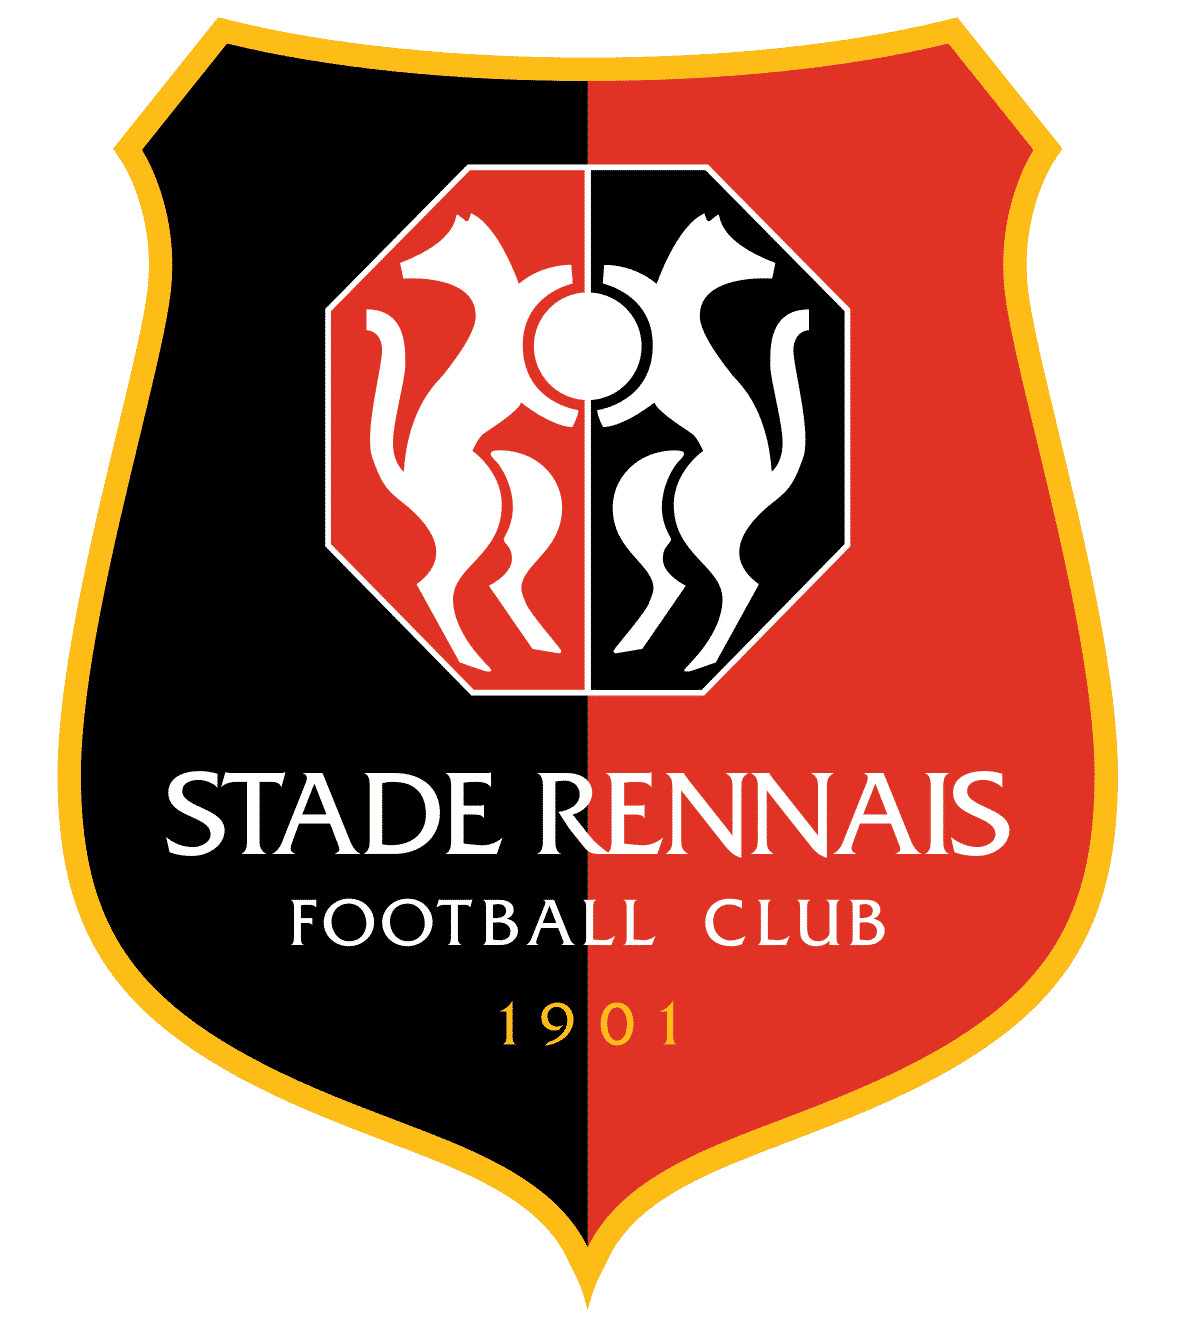 Match Nul (Remboursé si Victoire Rennes)